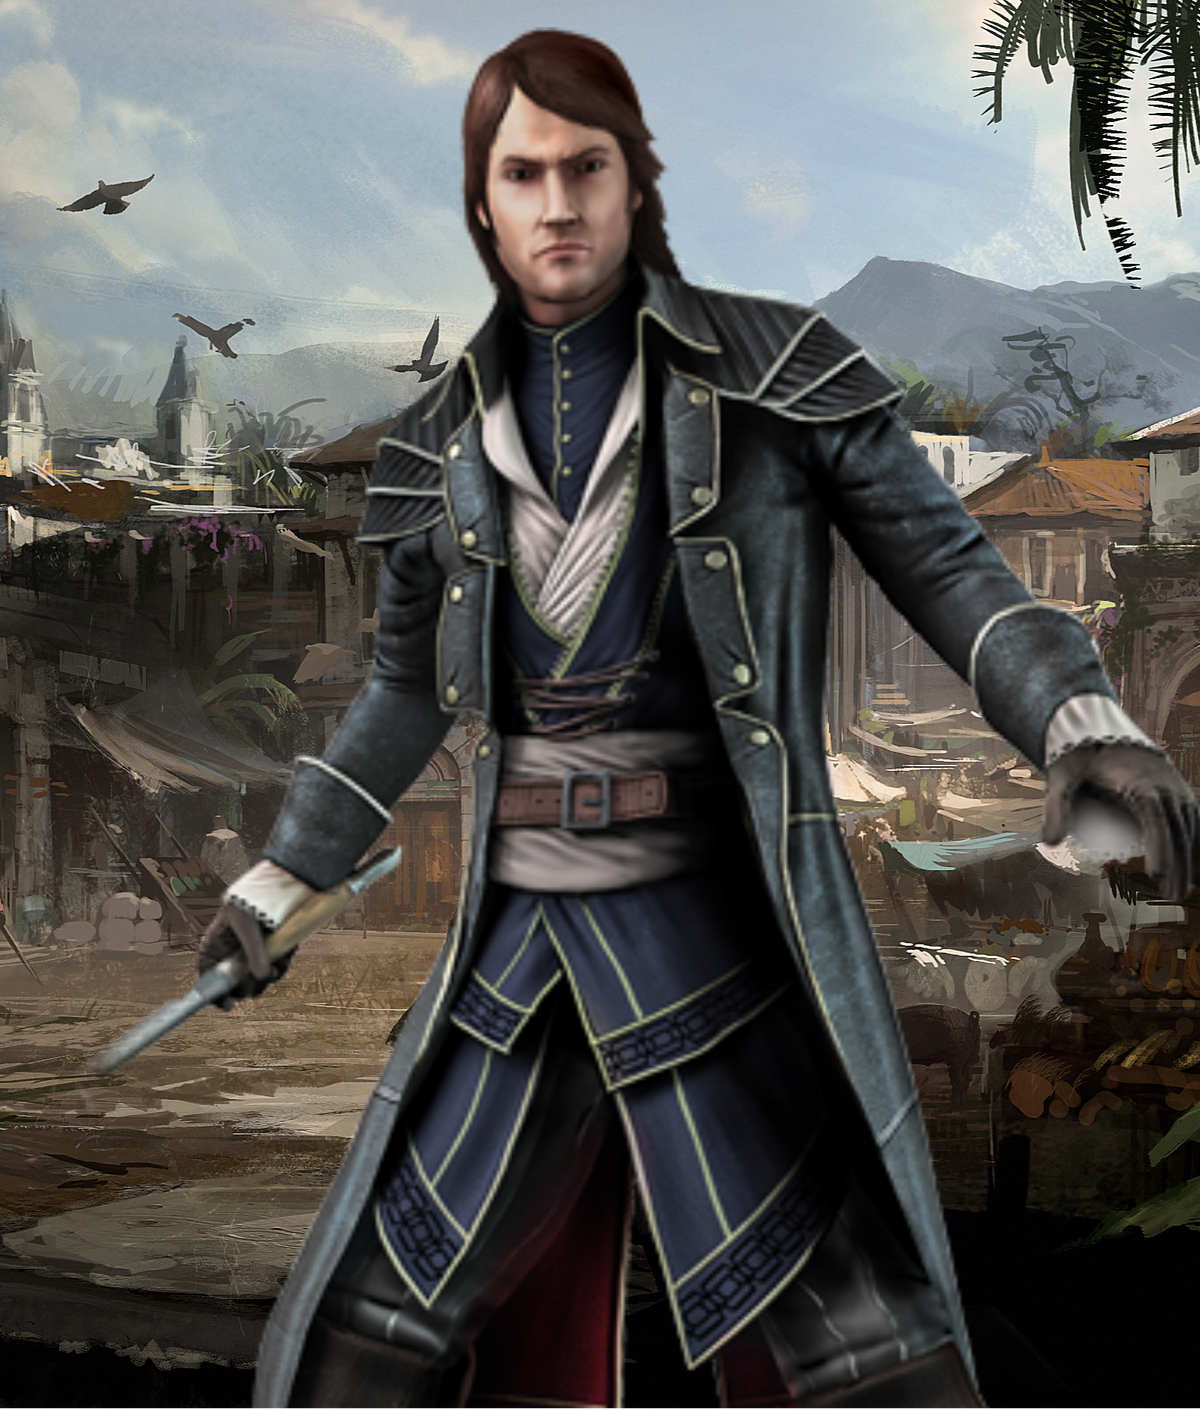 Edward Walpole, Assassin's Creed Fanon Wiki